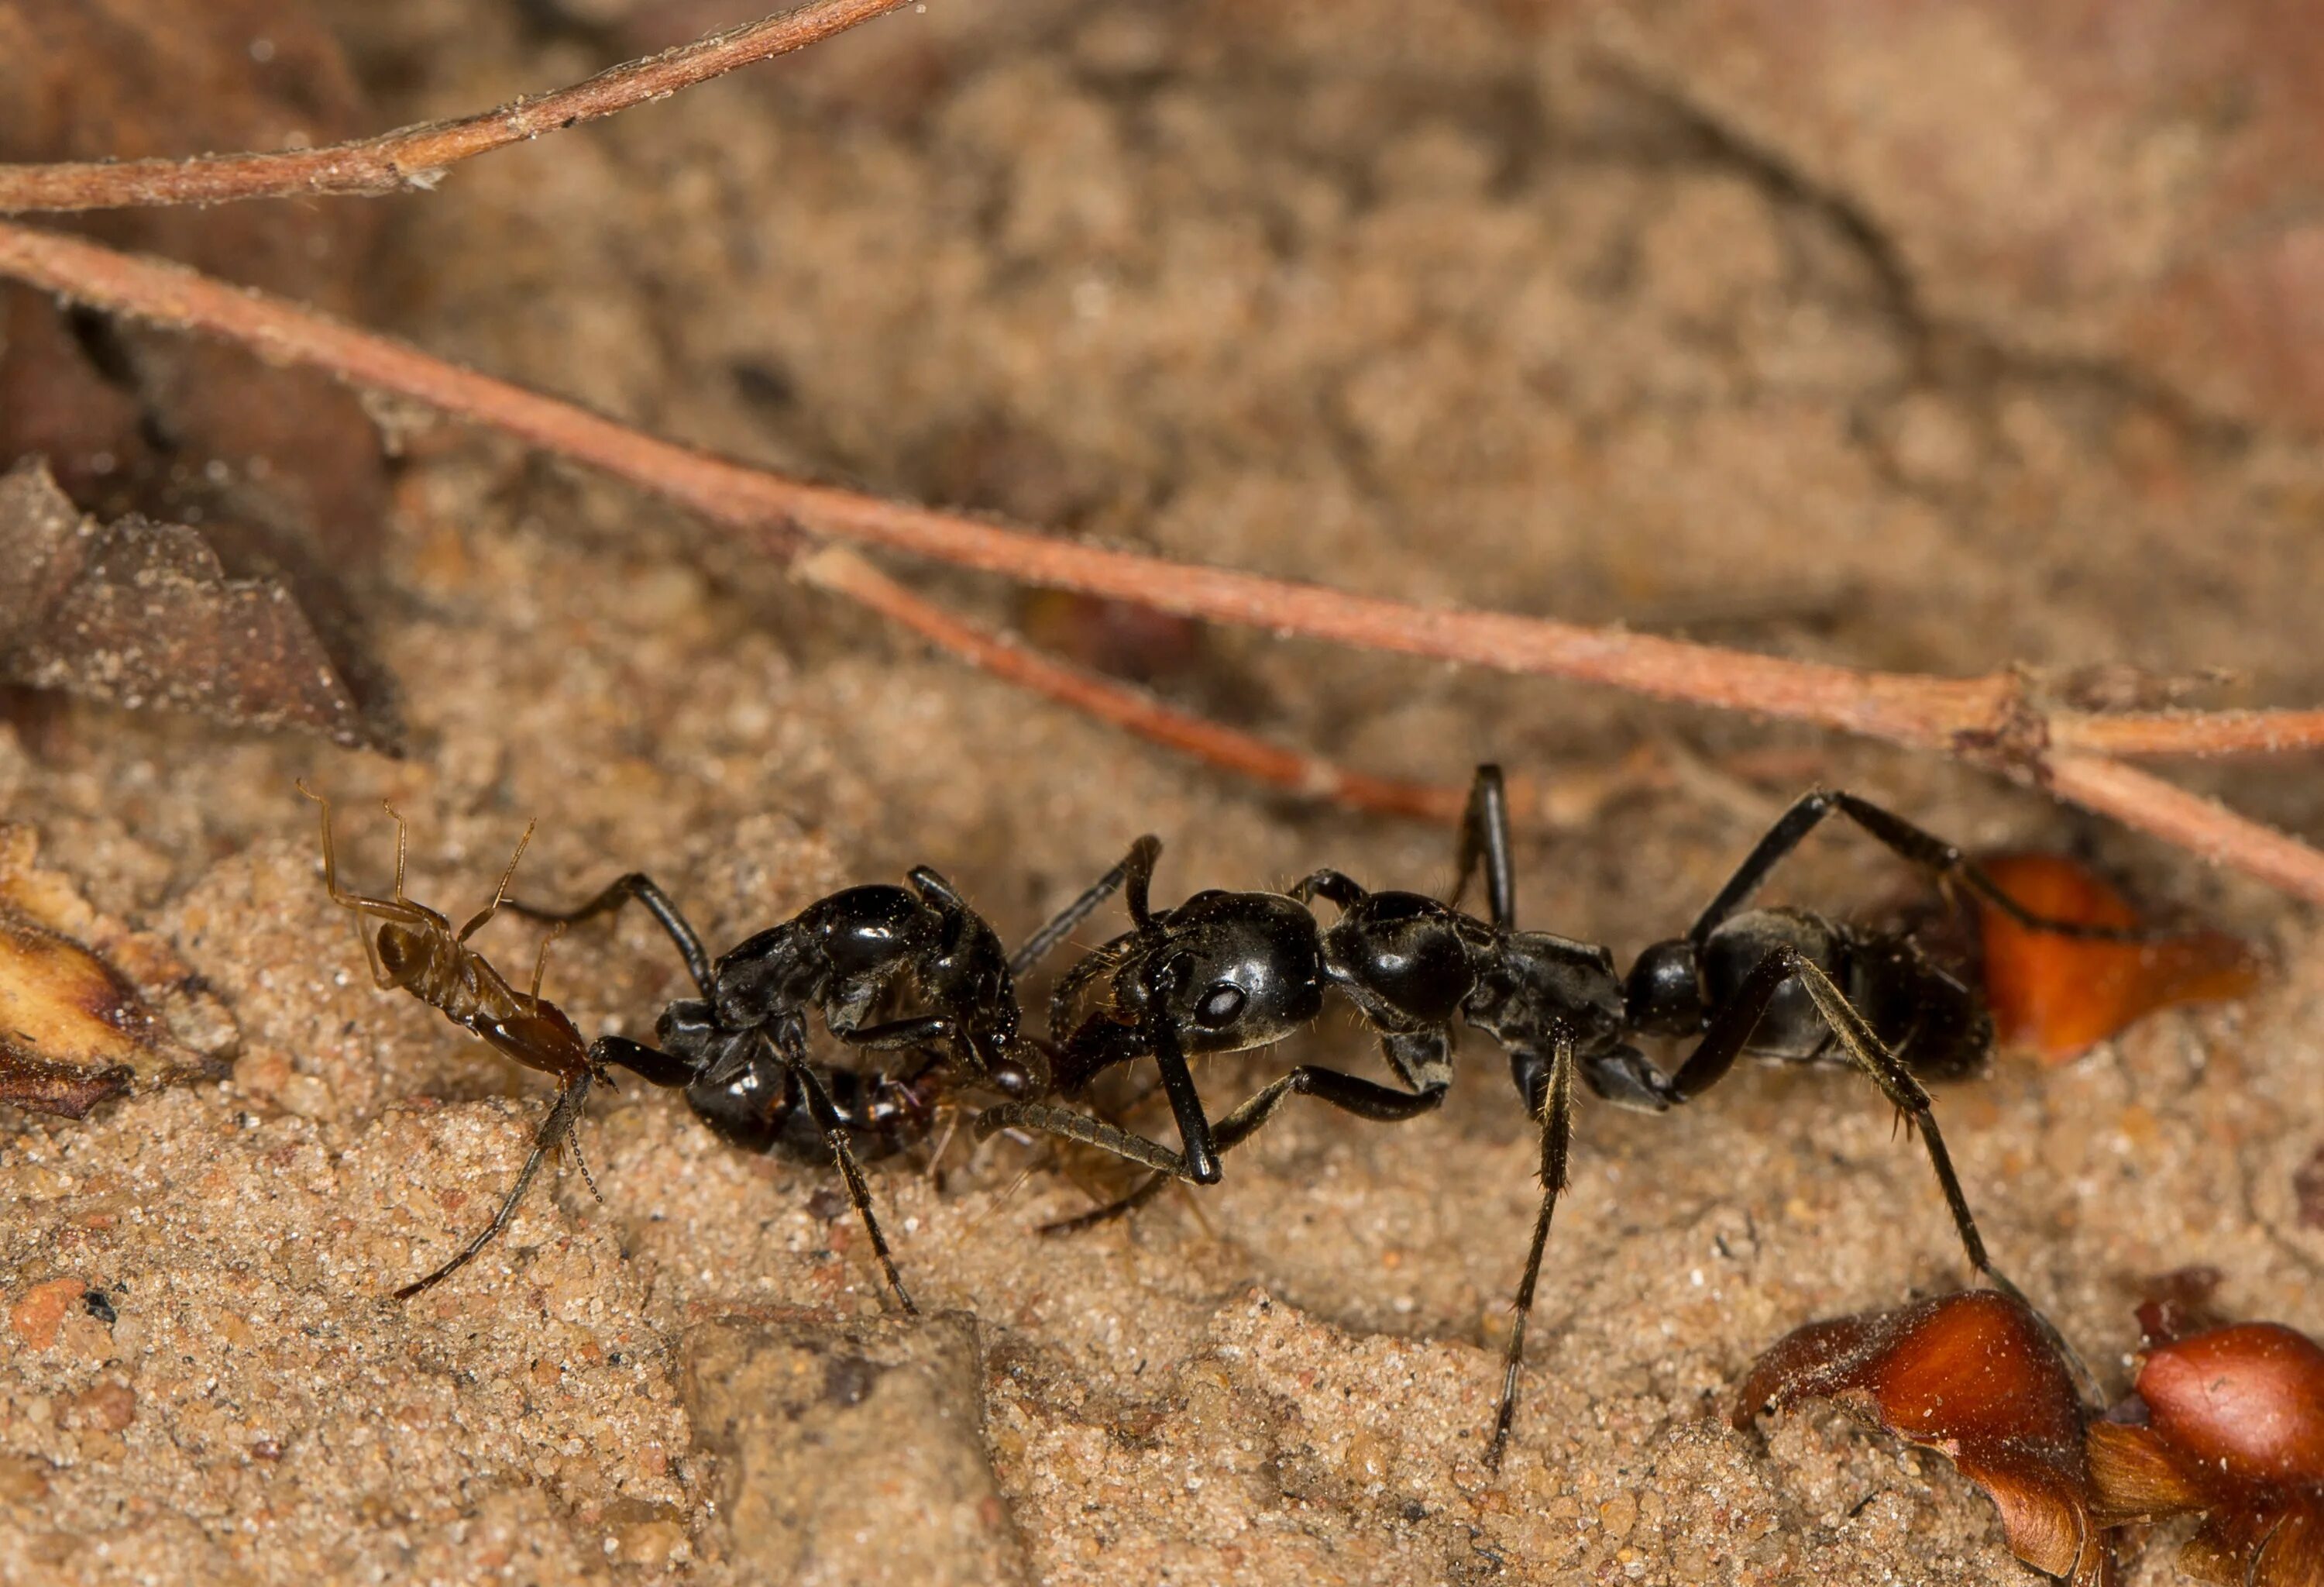 Название армейского муравья. Муравьи матабеле. Муравьи мегапонера. Dorylus муравьи. Термиты и муравьи матабеле.